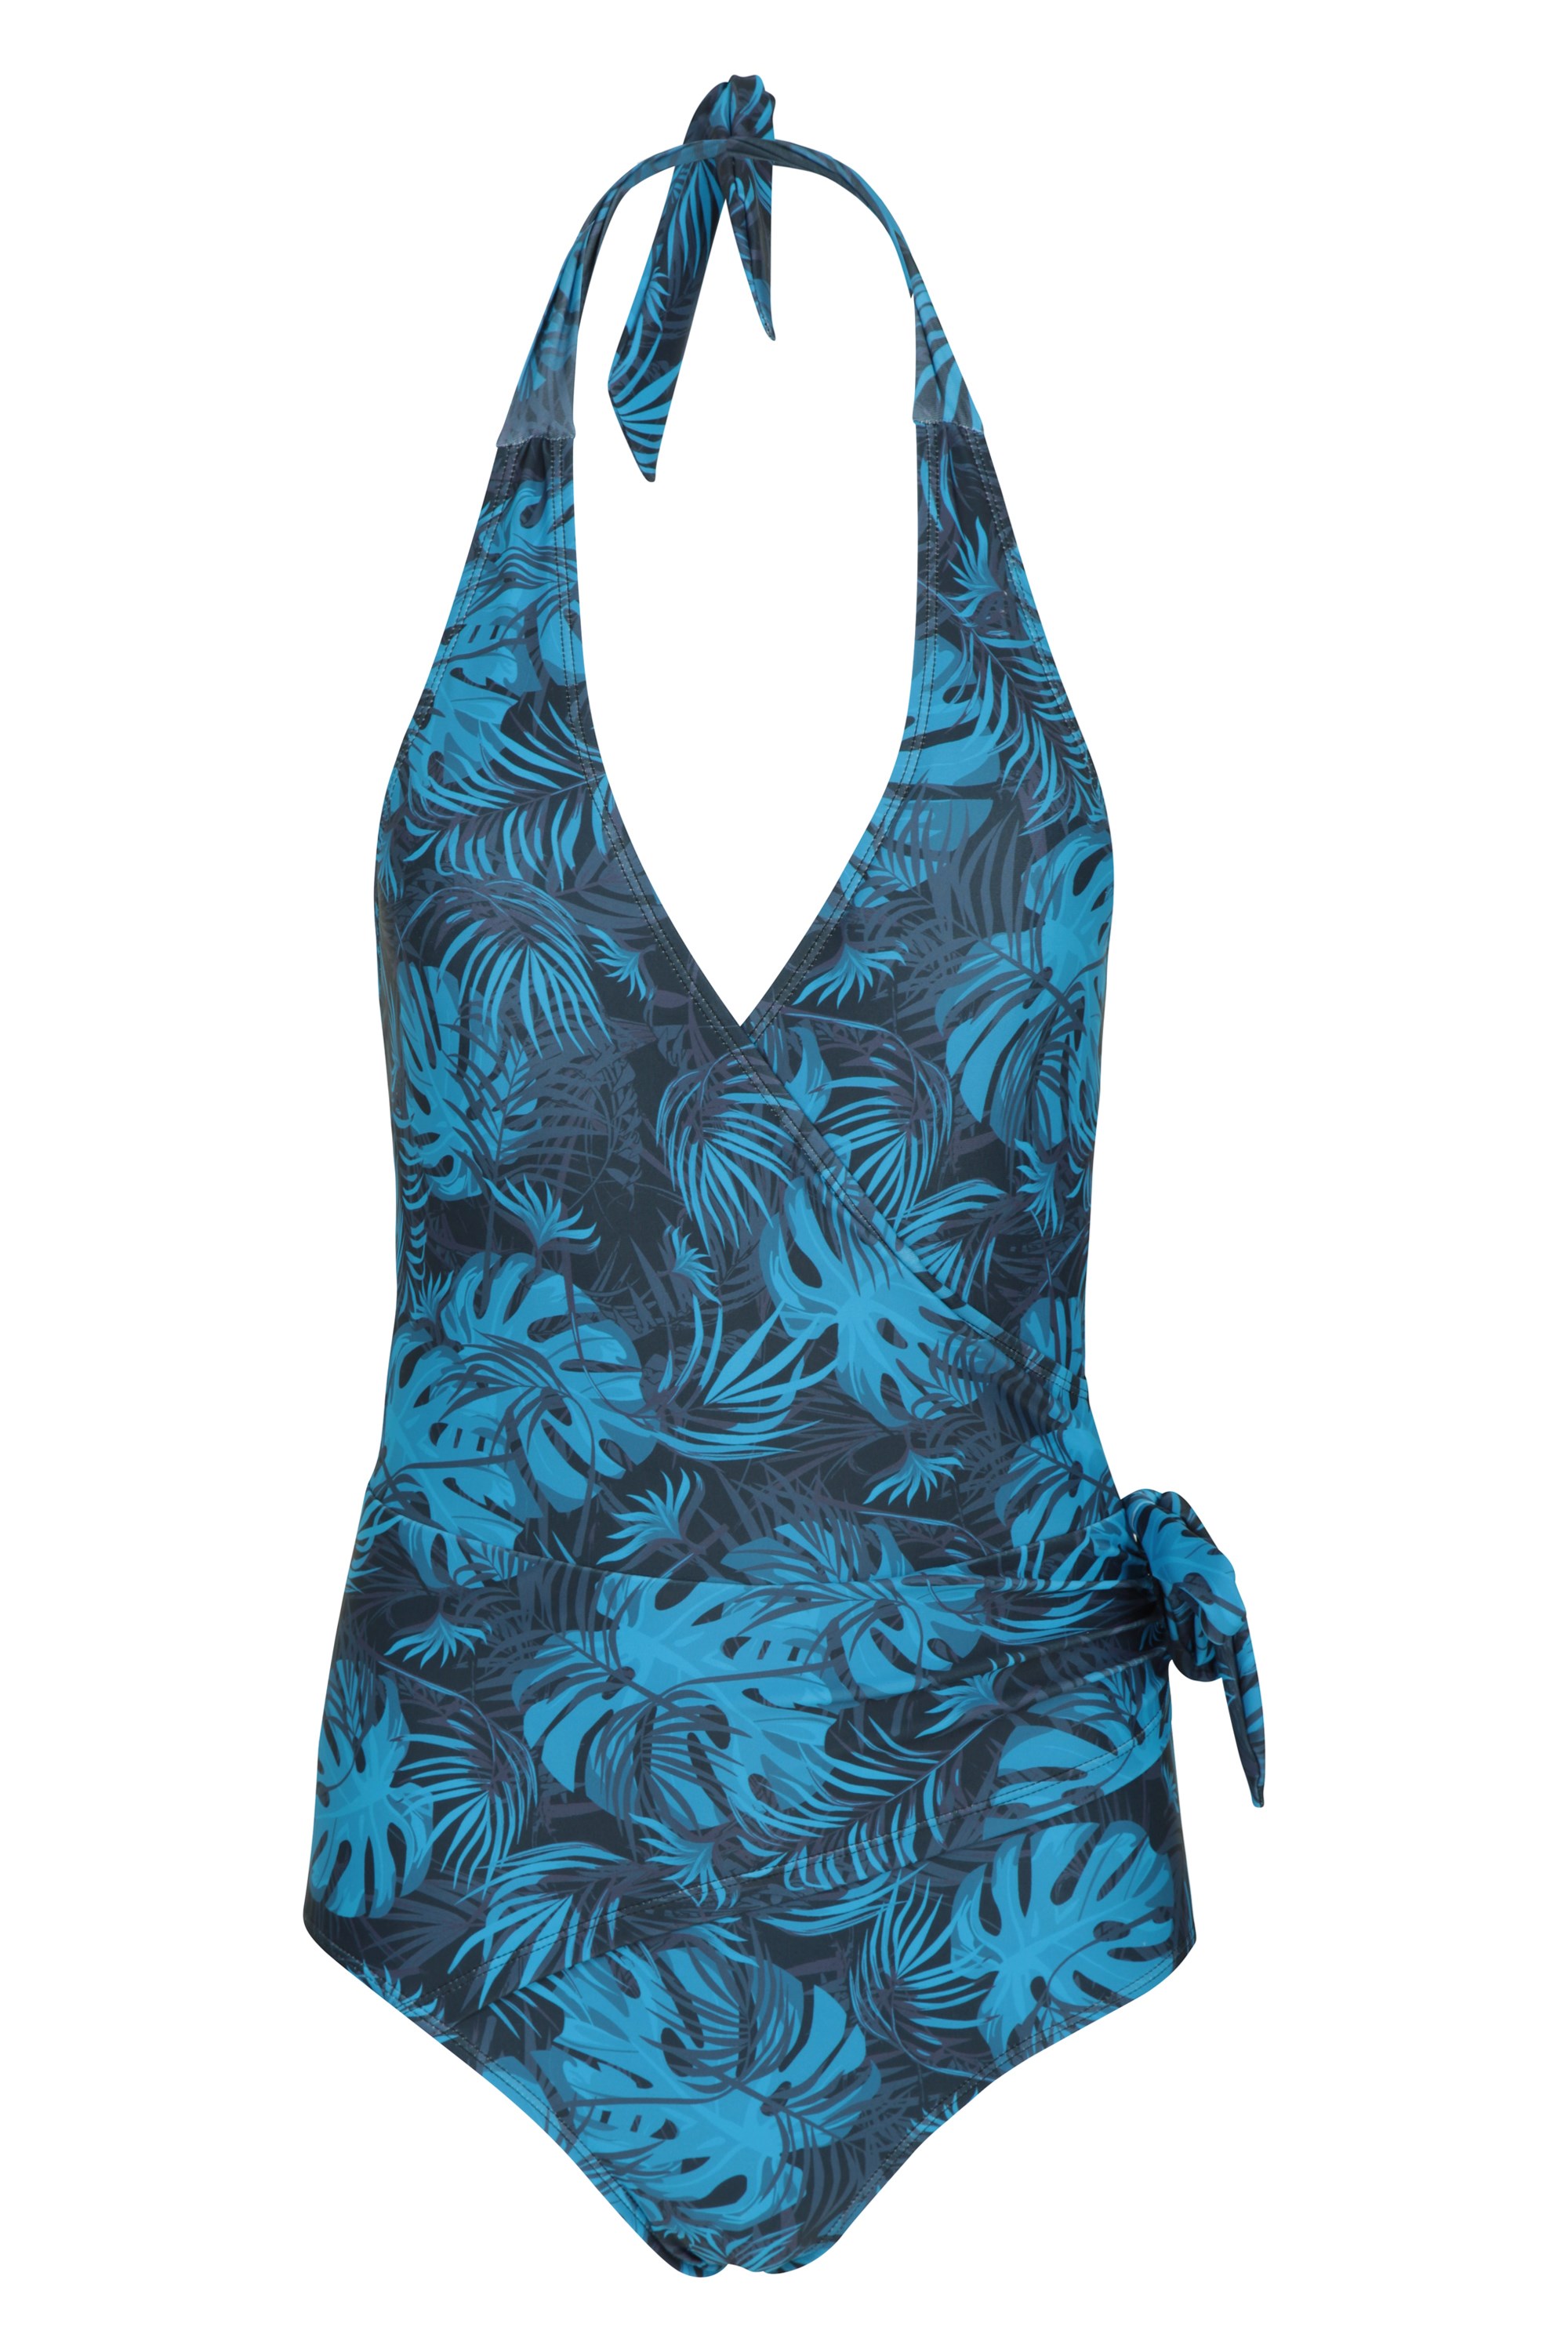 Mountain Warehouse Mountain Warehouse Ladies Halter Neck Swim Suit size 18 